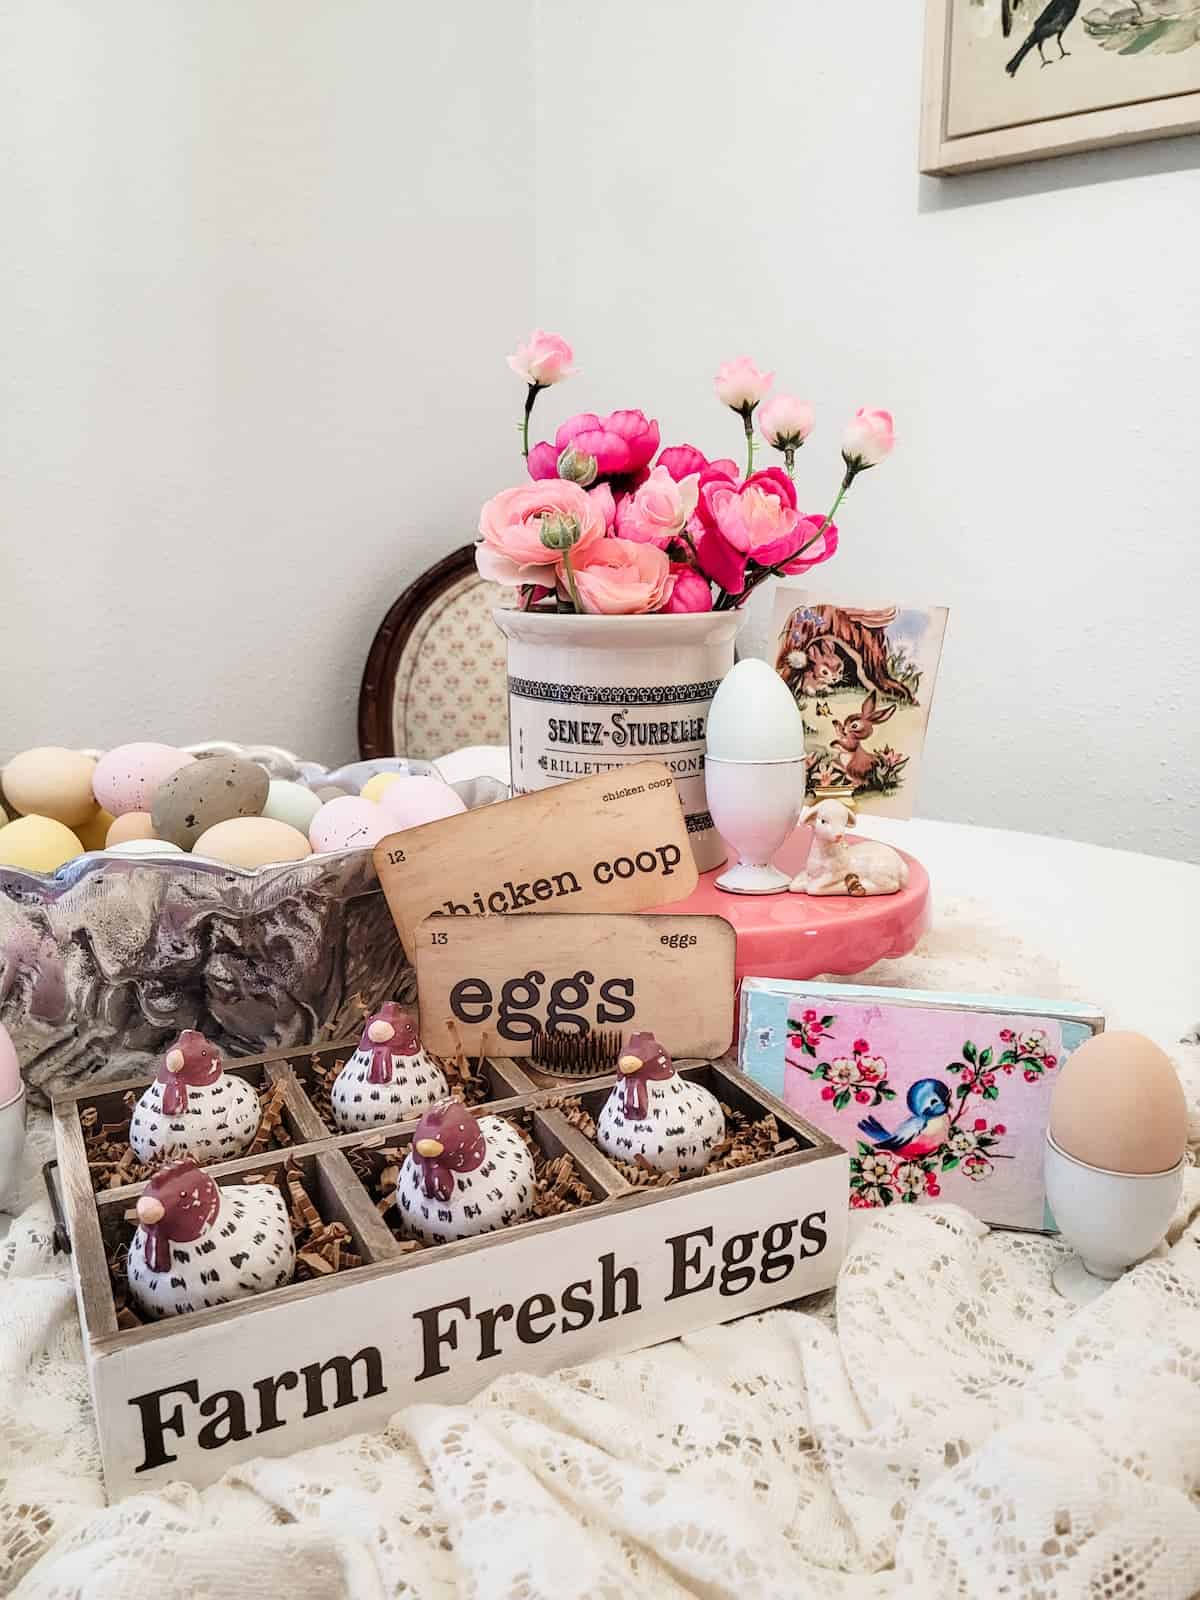 Farm fresh eggs and flowers on a table.